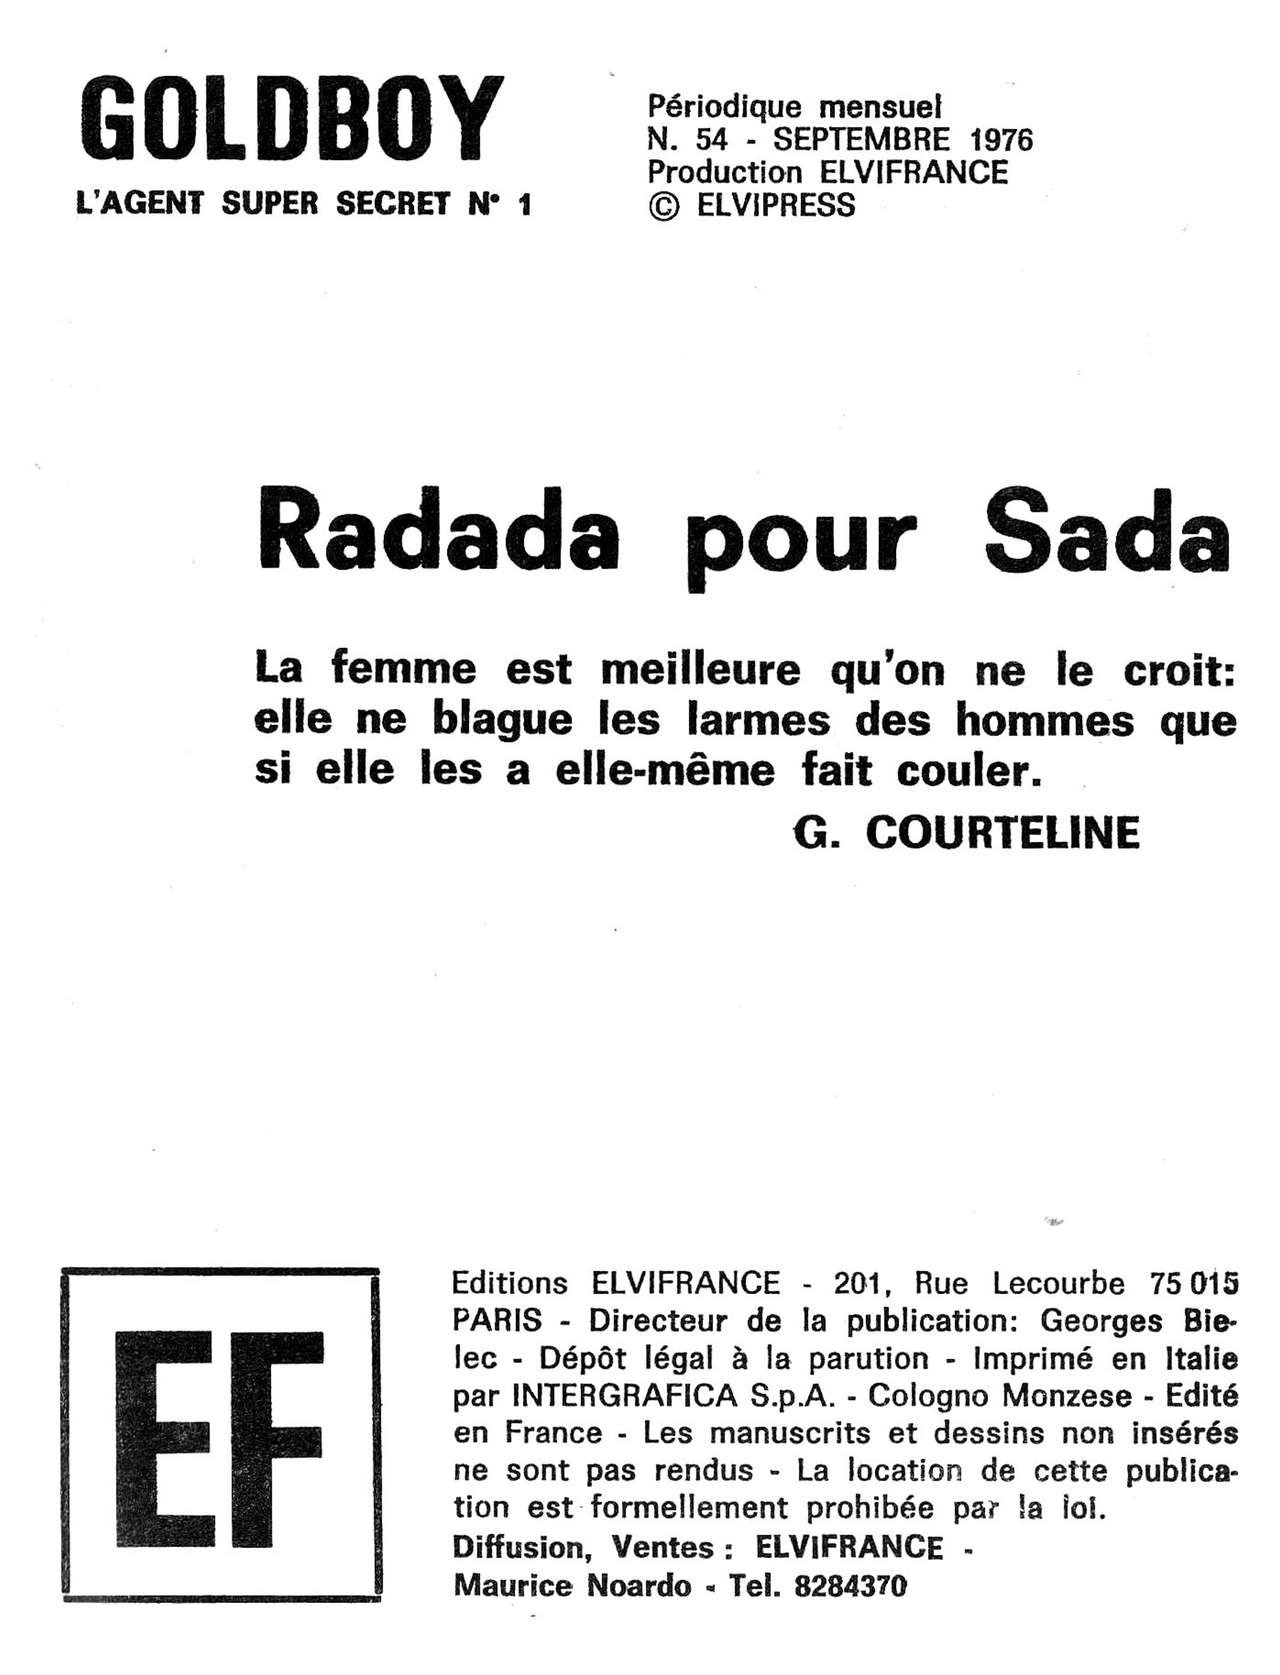 Elvifrance - Goldboy - T54 - Radada pour Sada [French] 2